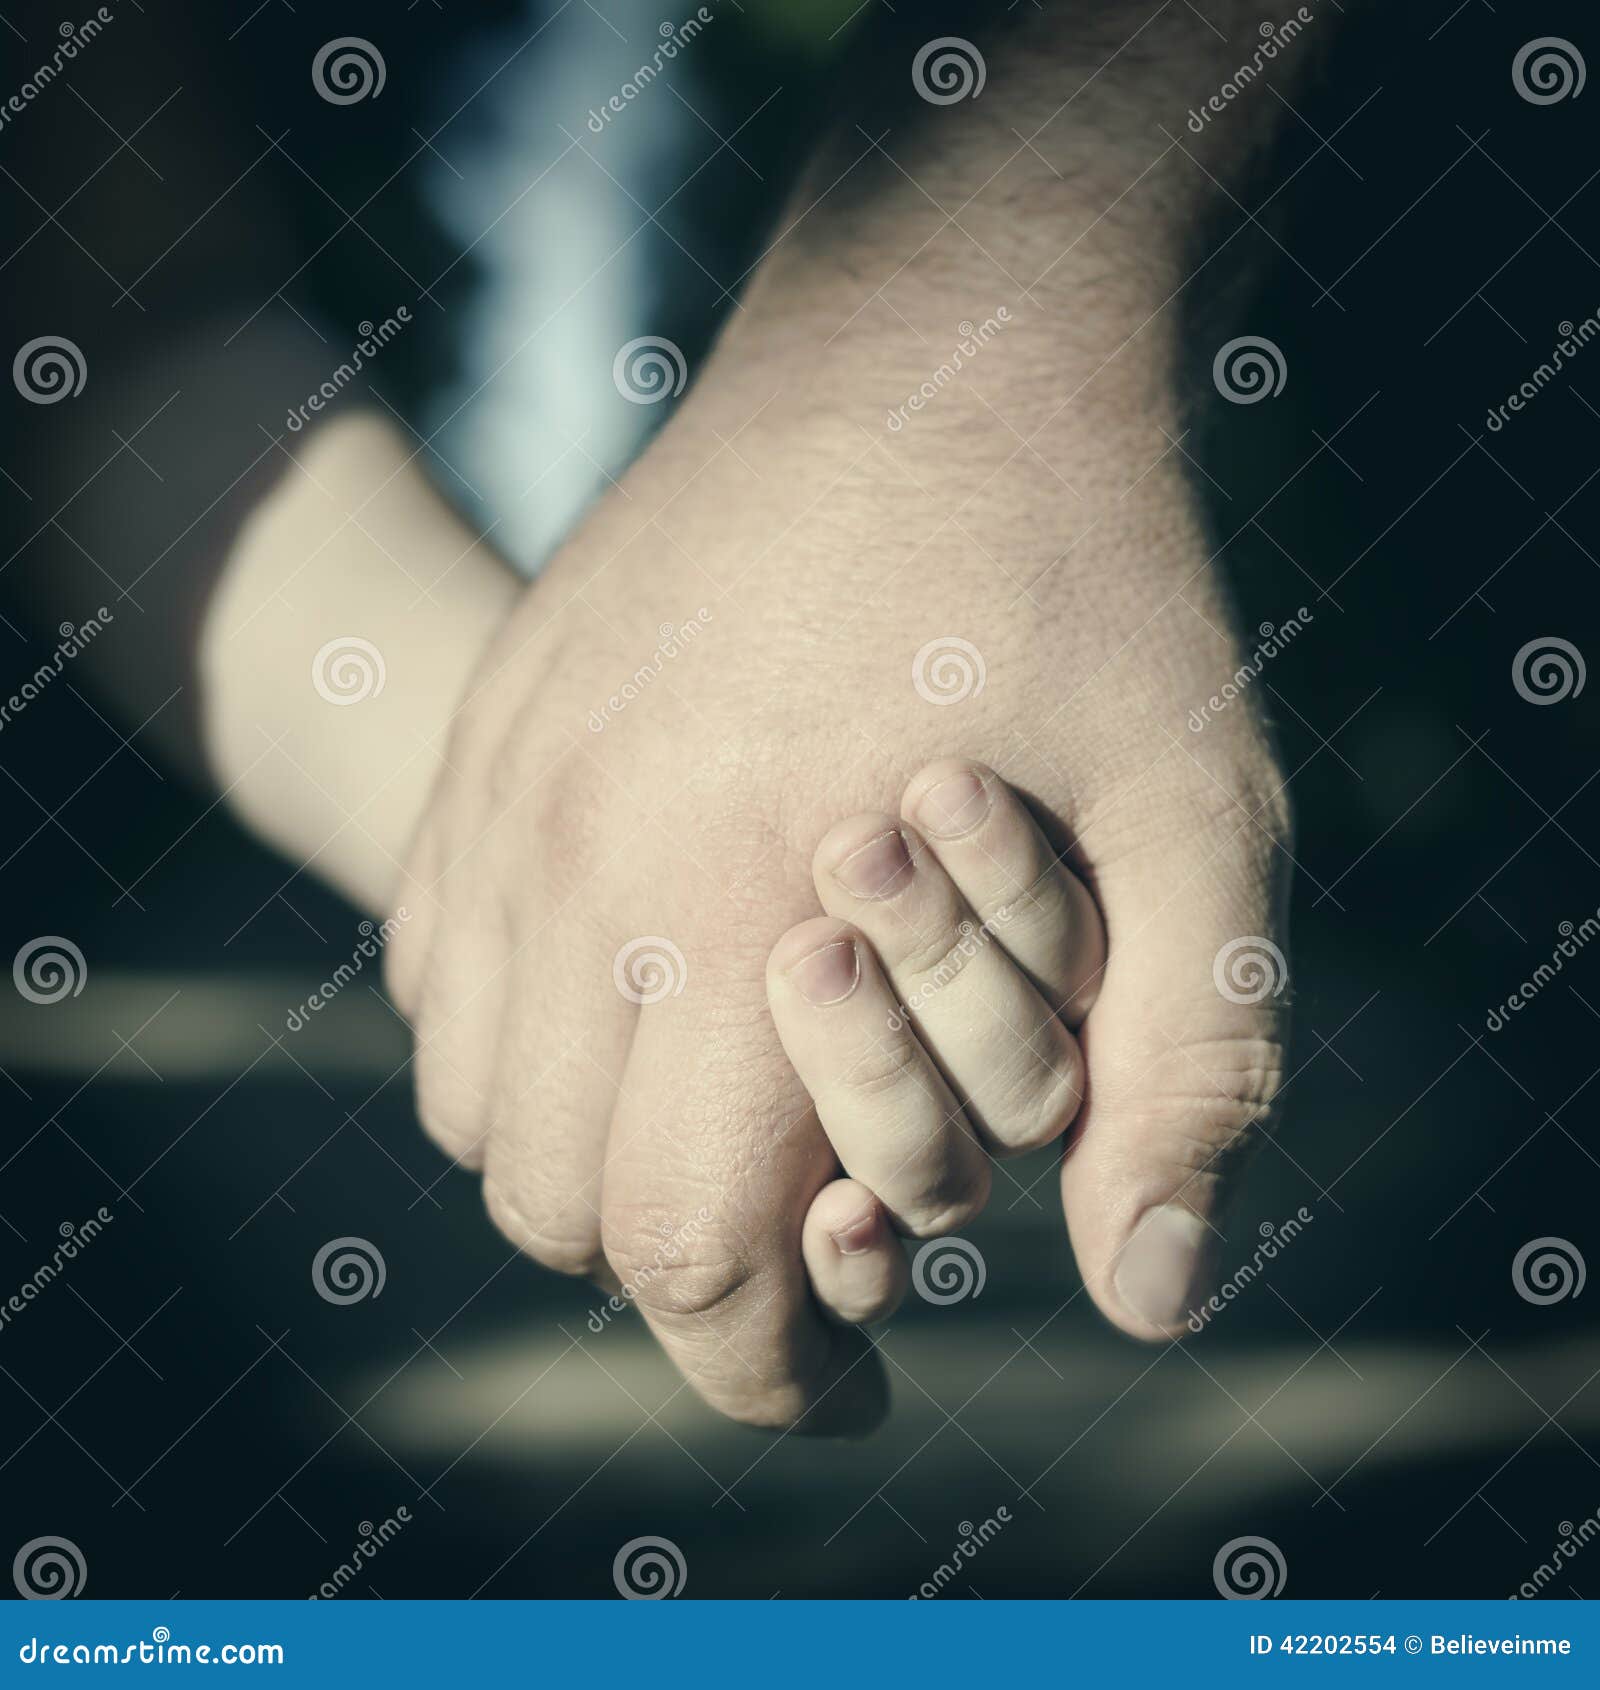 孩子握父亲的手 图库摄影 - 图片: 32062352